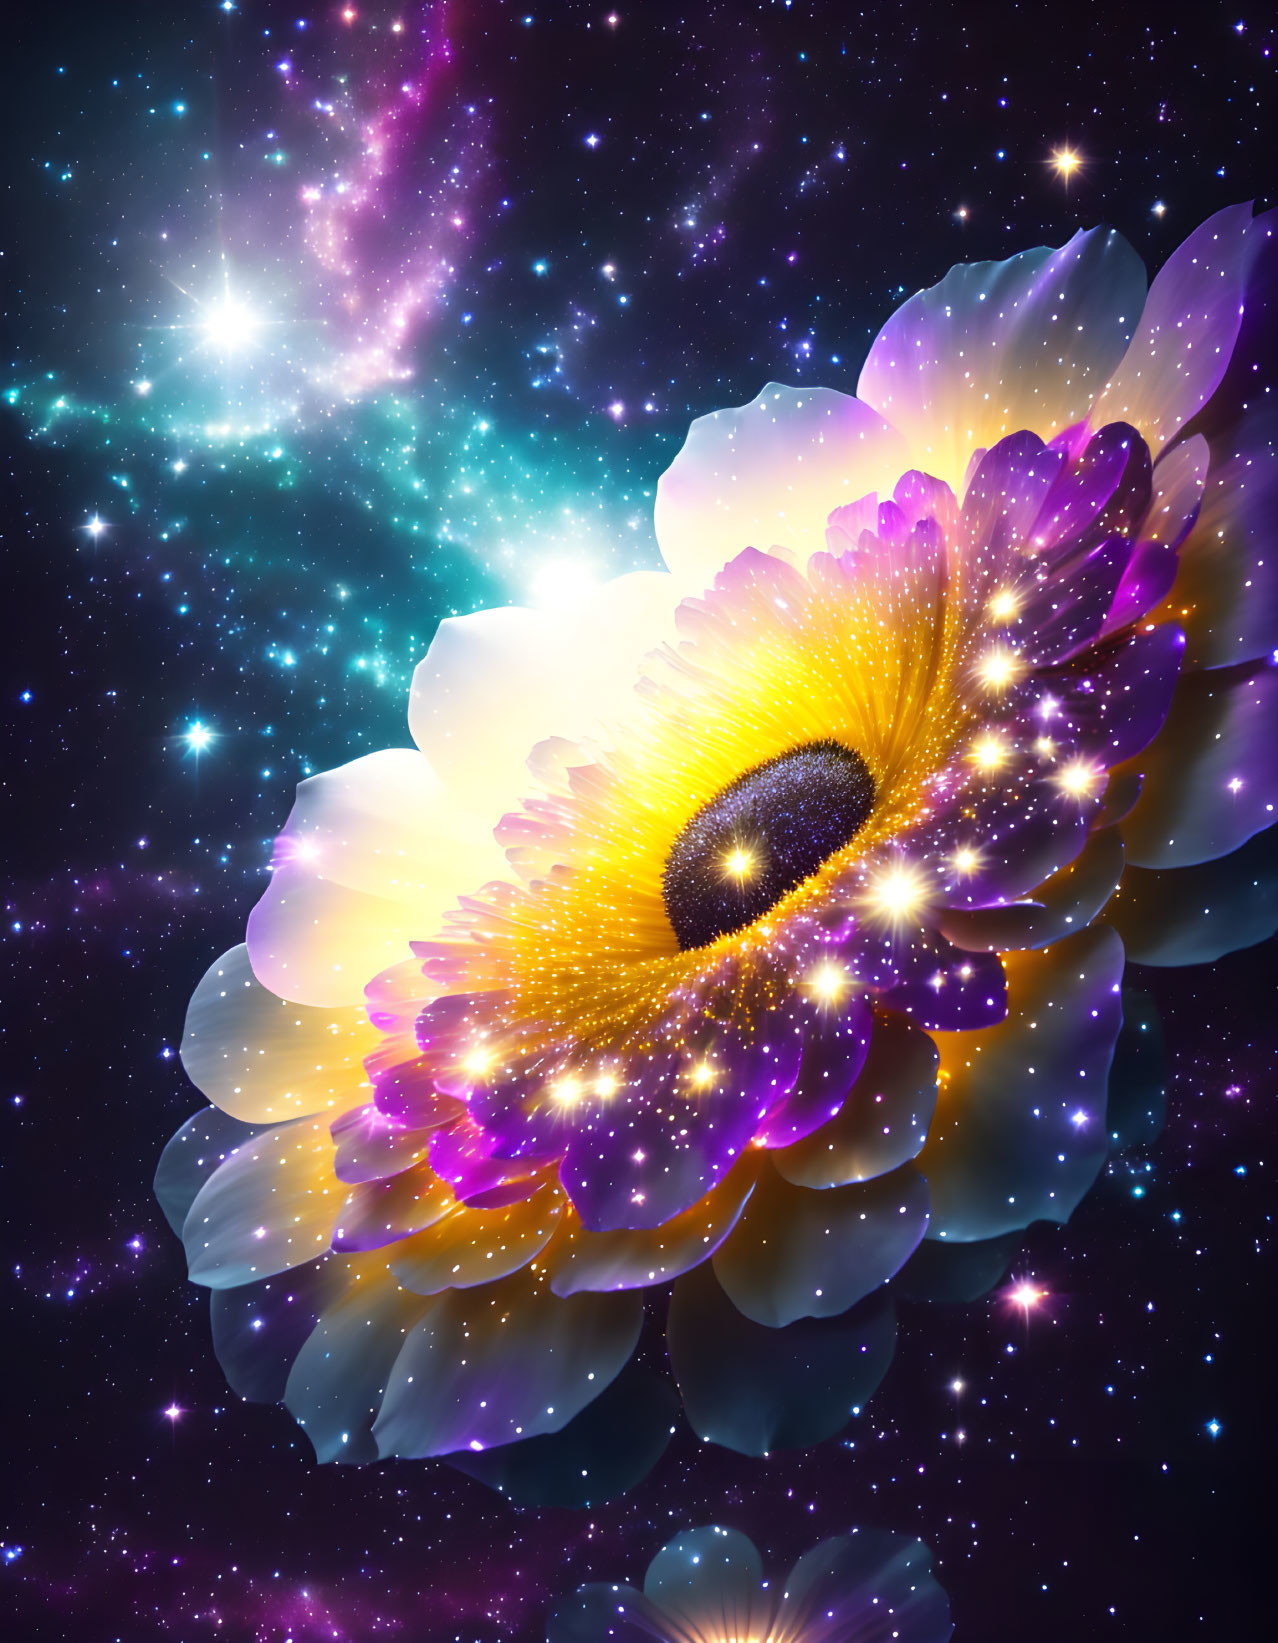 Flower of the stars